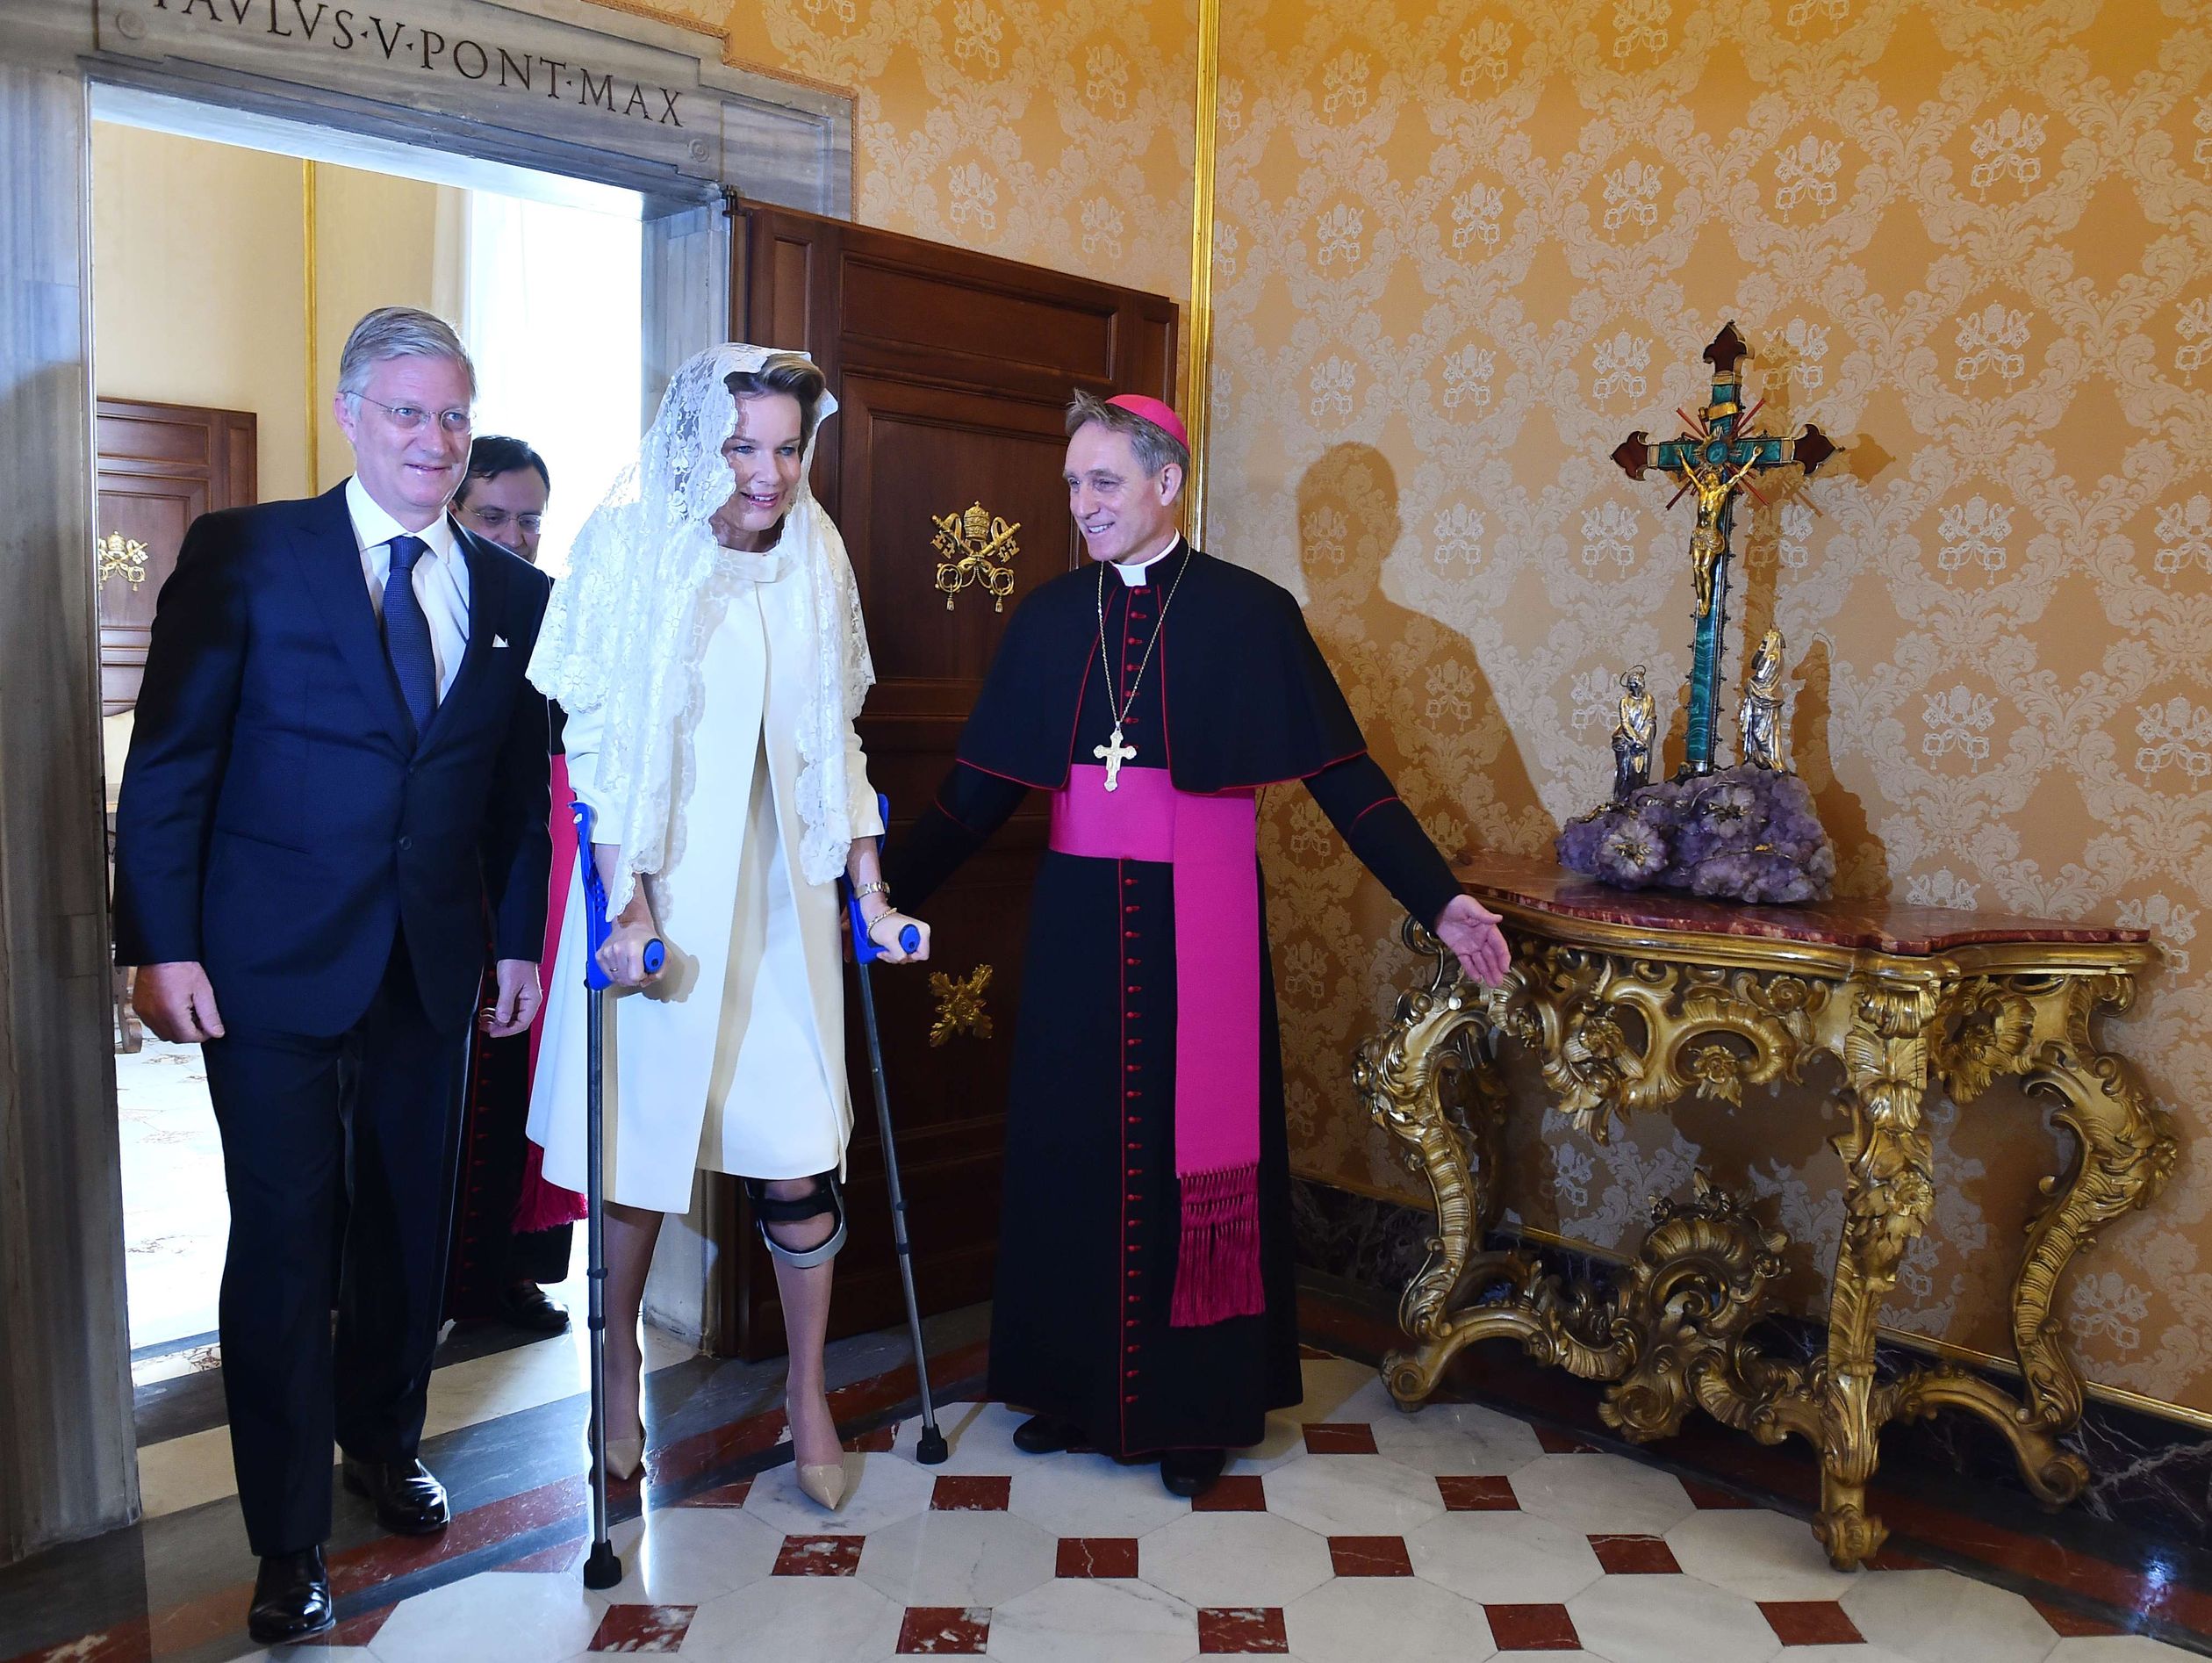 Op bezoek bij de paus maakt Mathilde een unieke indruk. Door een val tijdens een skivakantie moest